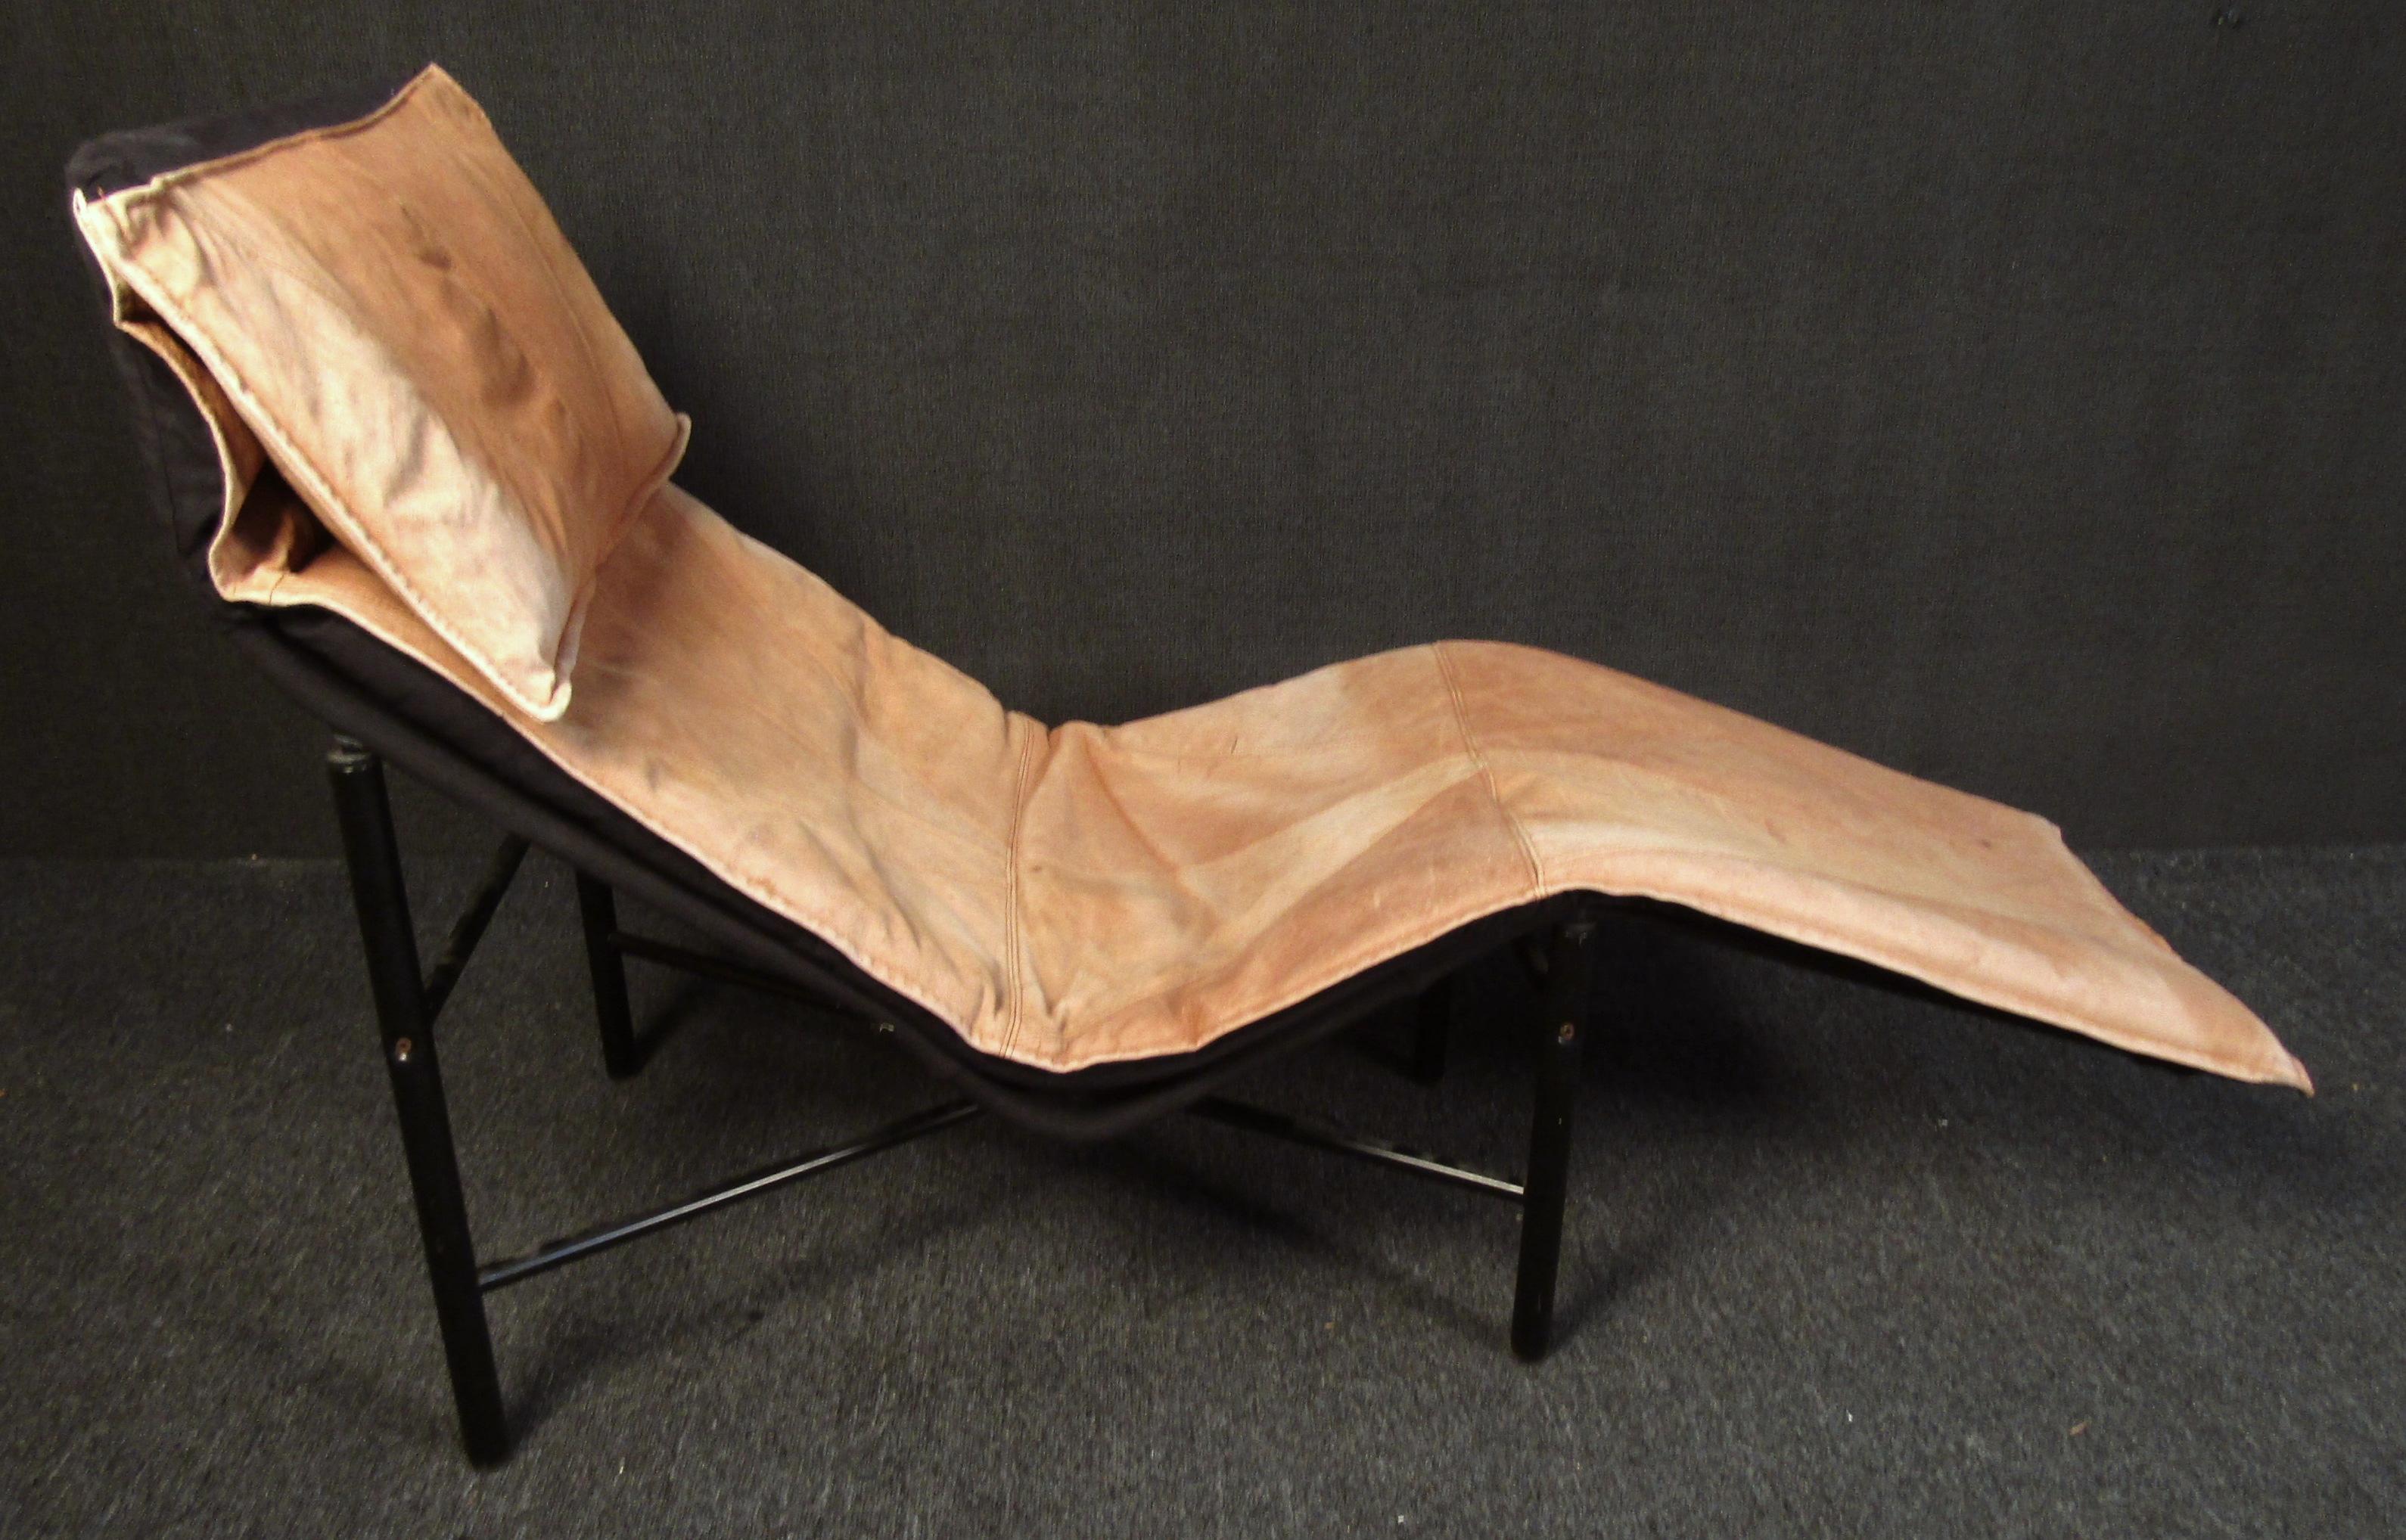 Magnifique chaise longue moderne vintage, recouverte d'un cuir fauve clair. Le cuir joliment vieilli confère à cette chaise longue une esthétique usée et confortable tout en restant élégante.

Veuillez confirmer la localisation de l'article (NY ou